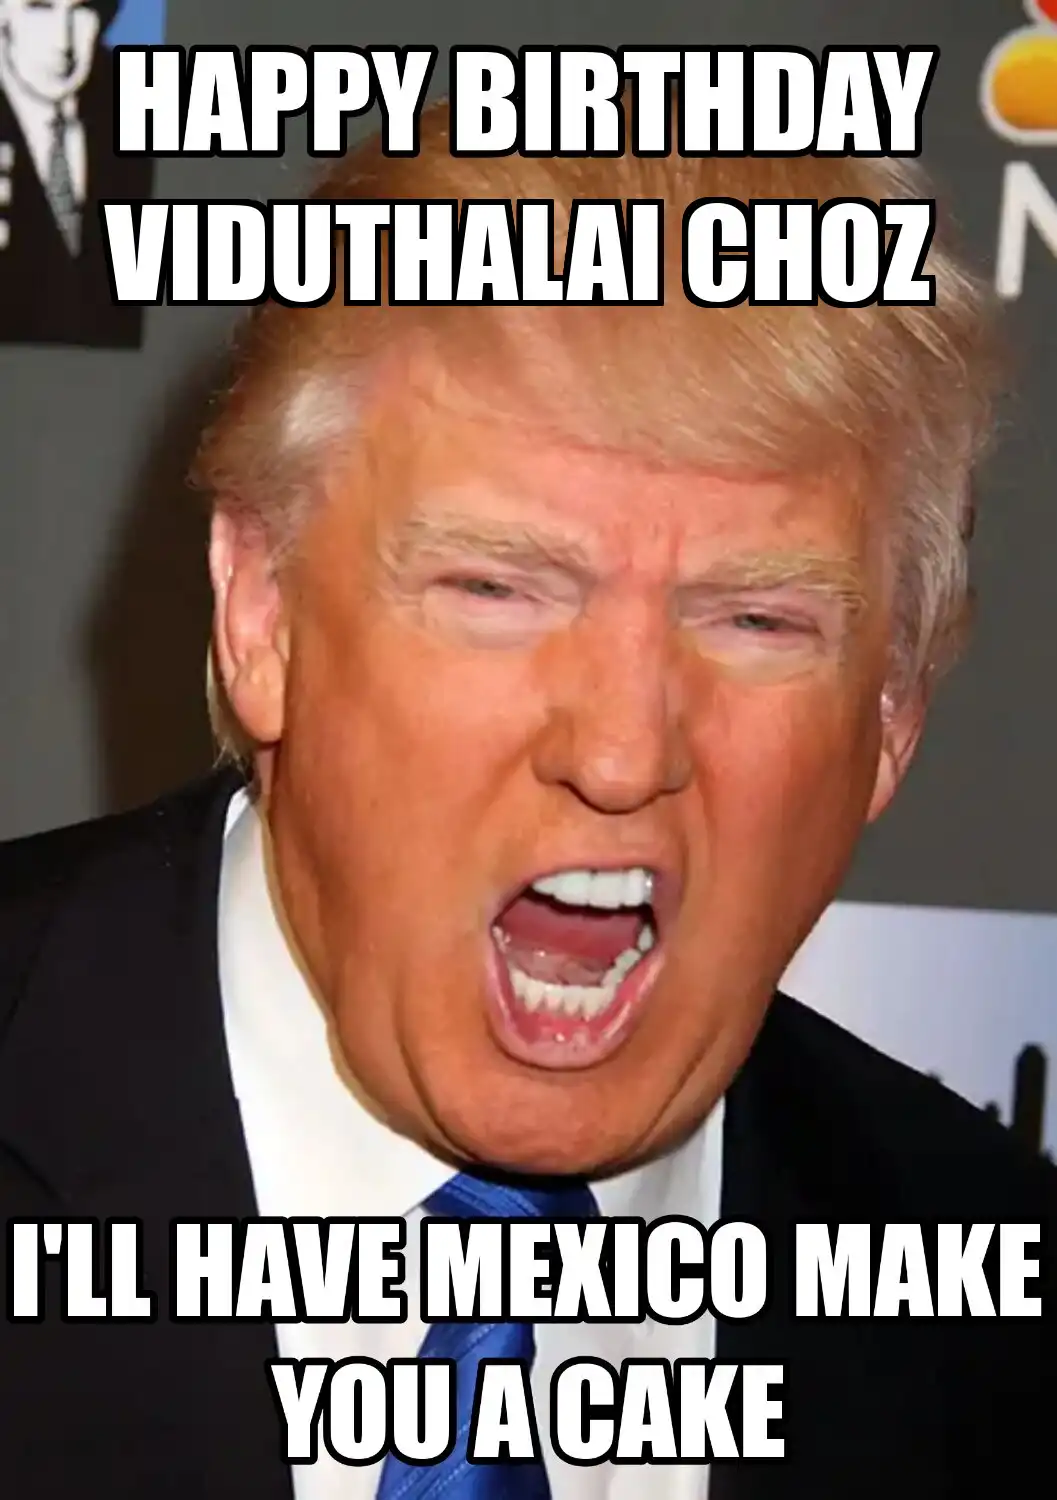 Happy Birthday Viduthalai choz Mexico Make You A Cake Meme